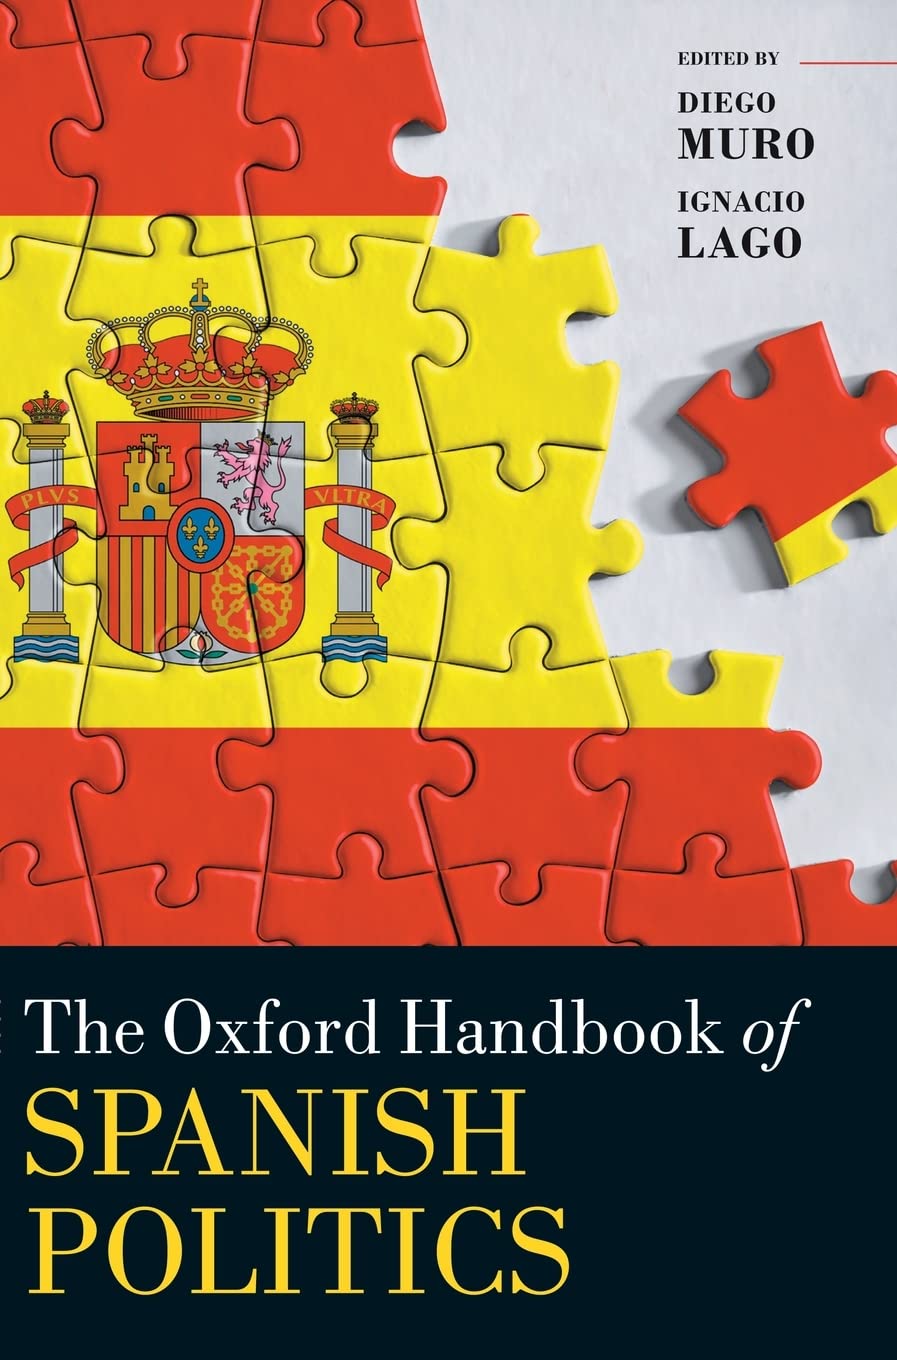 Imagen de portada del libro The Oxford Handbook of Spanish Politics